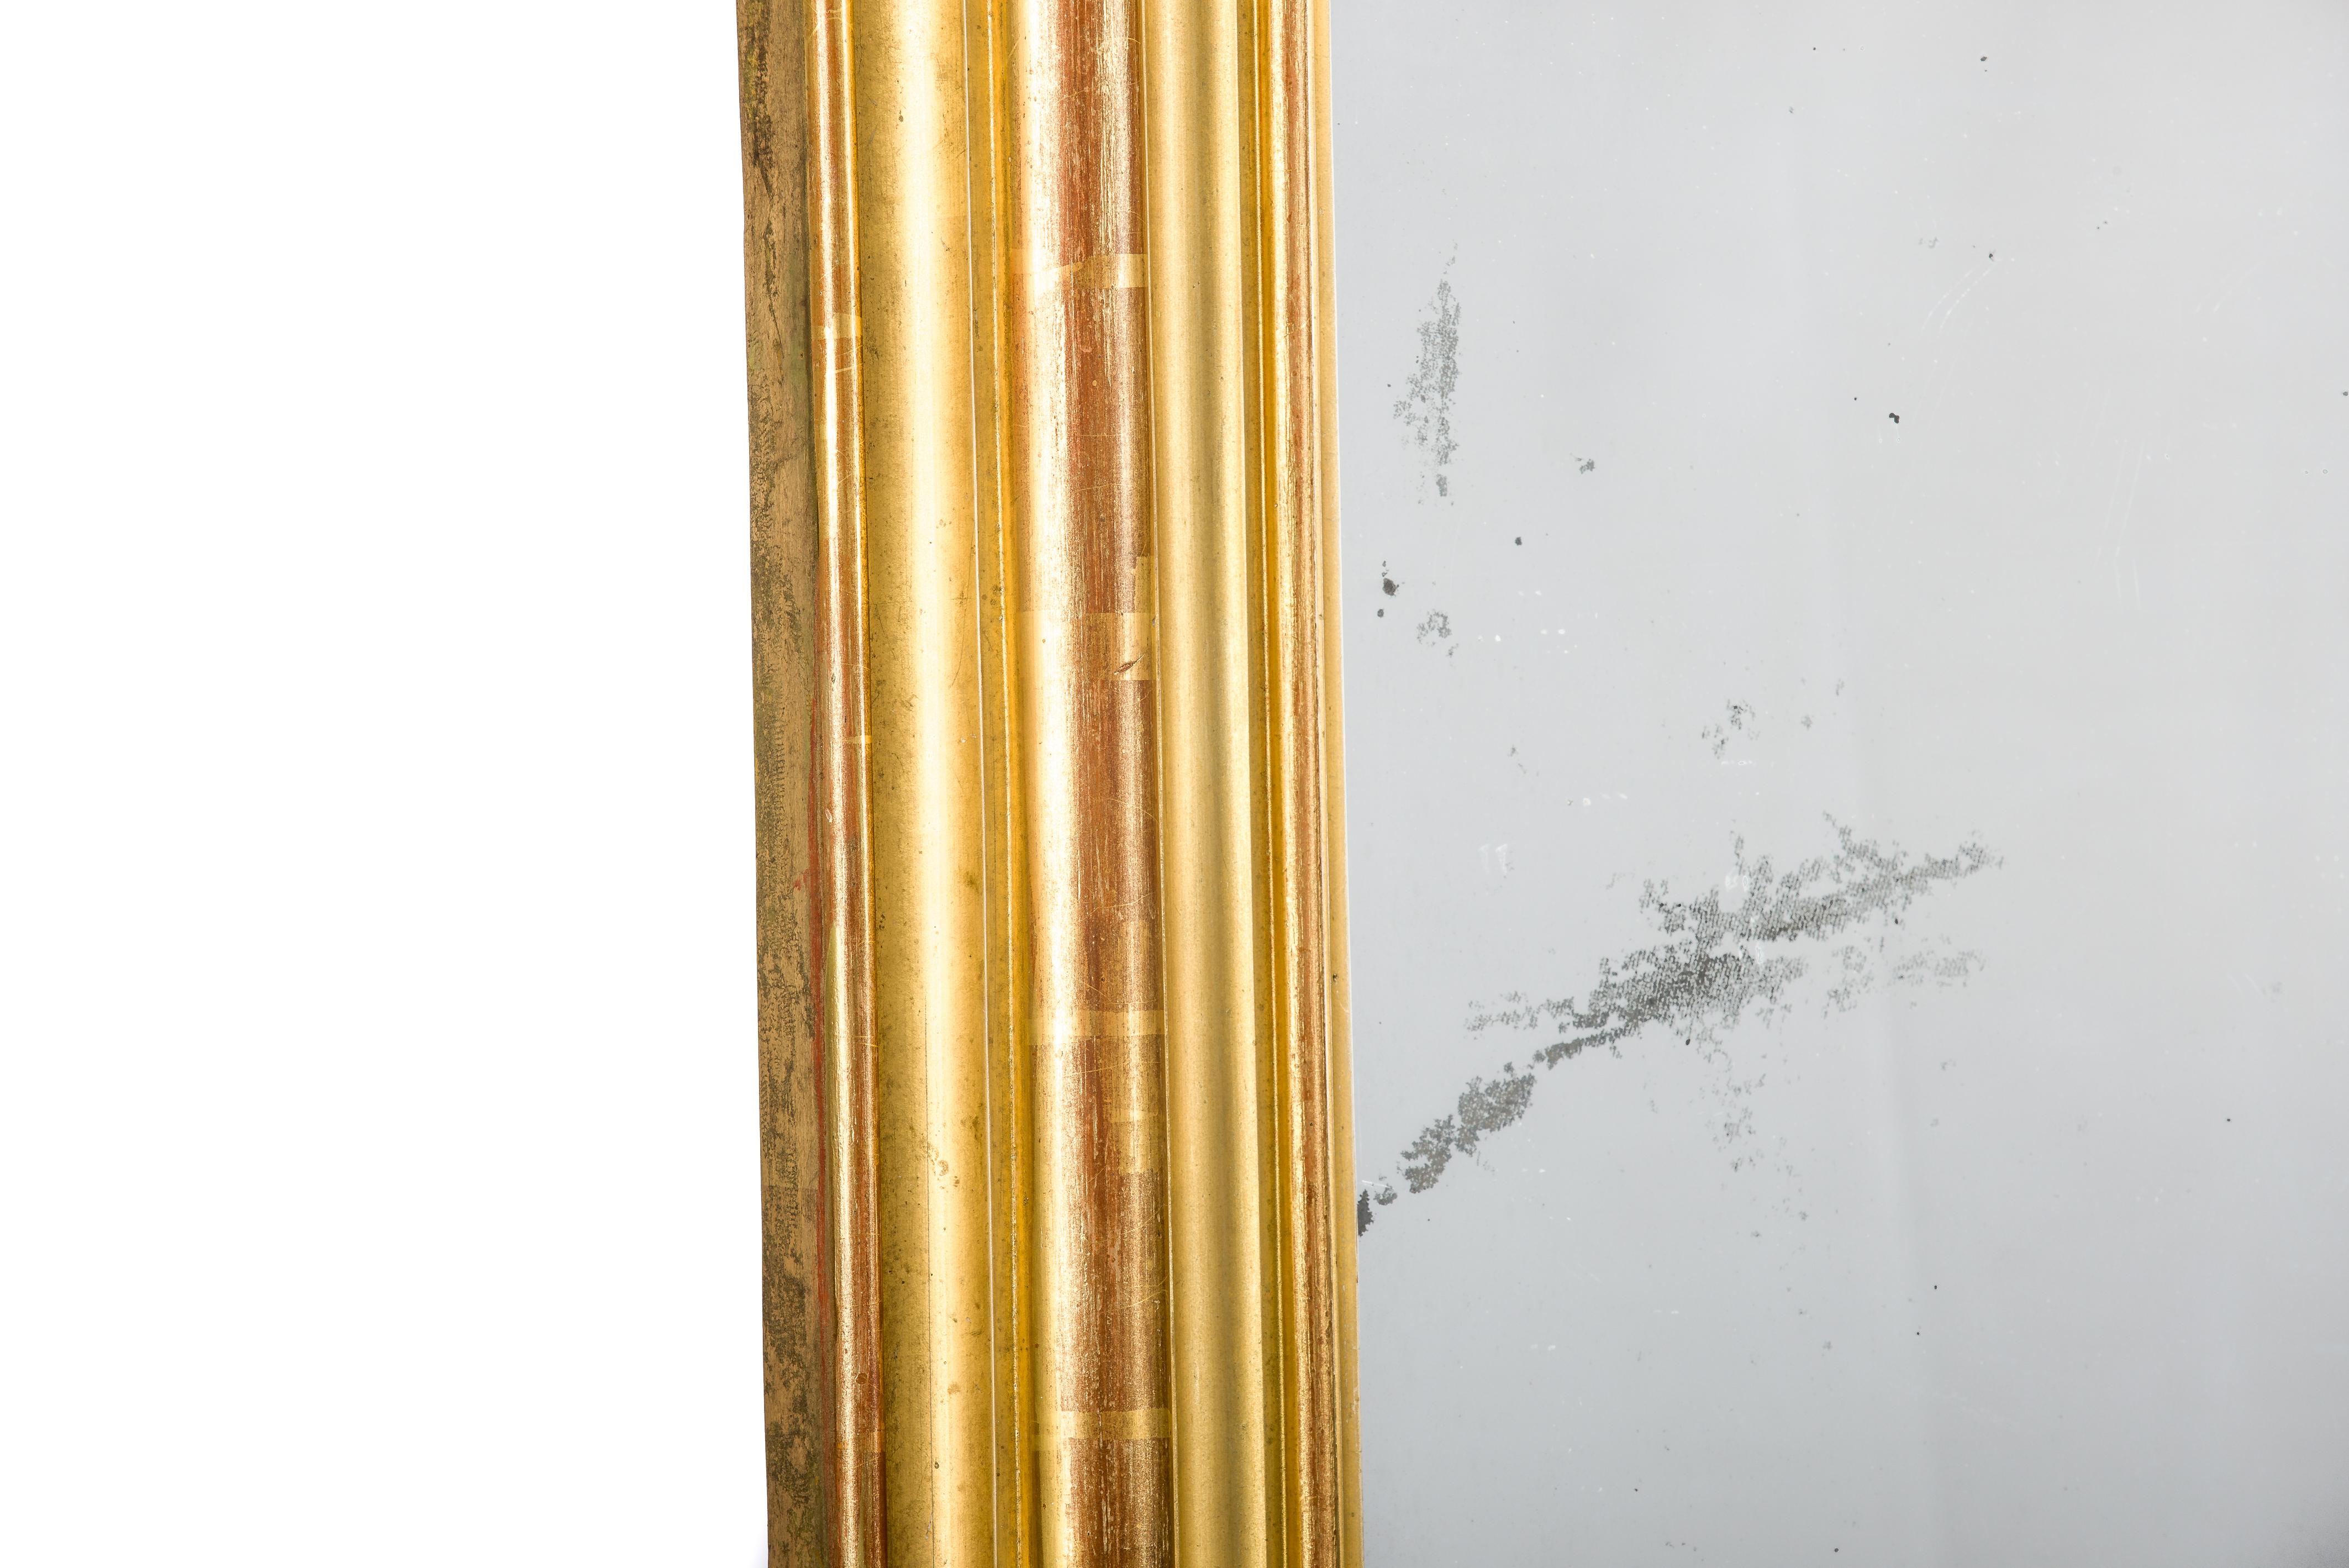 Ce monumental grand miroir doré à la feuille d'or a été fabriqué en France au milieu du XIXe siècle, vers 1830. 
Il présente les angles supérieurs arrondis typiques des miroirs de style Louis Philippe. La pièce était richement décorée de fruits, de